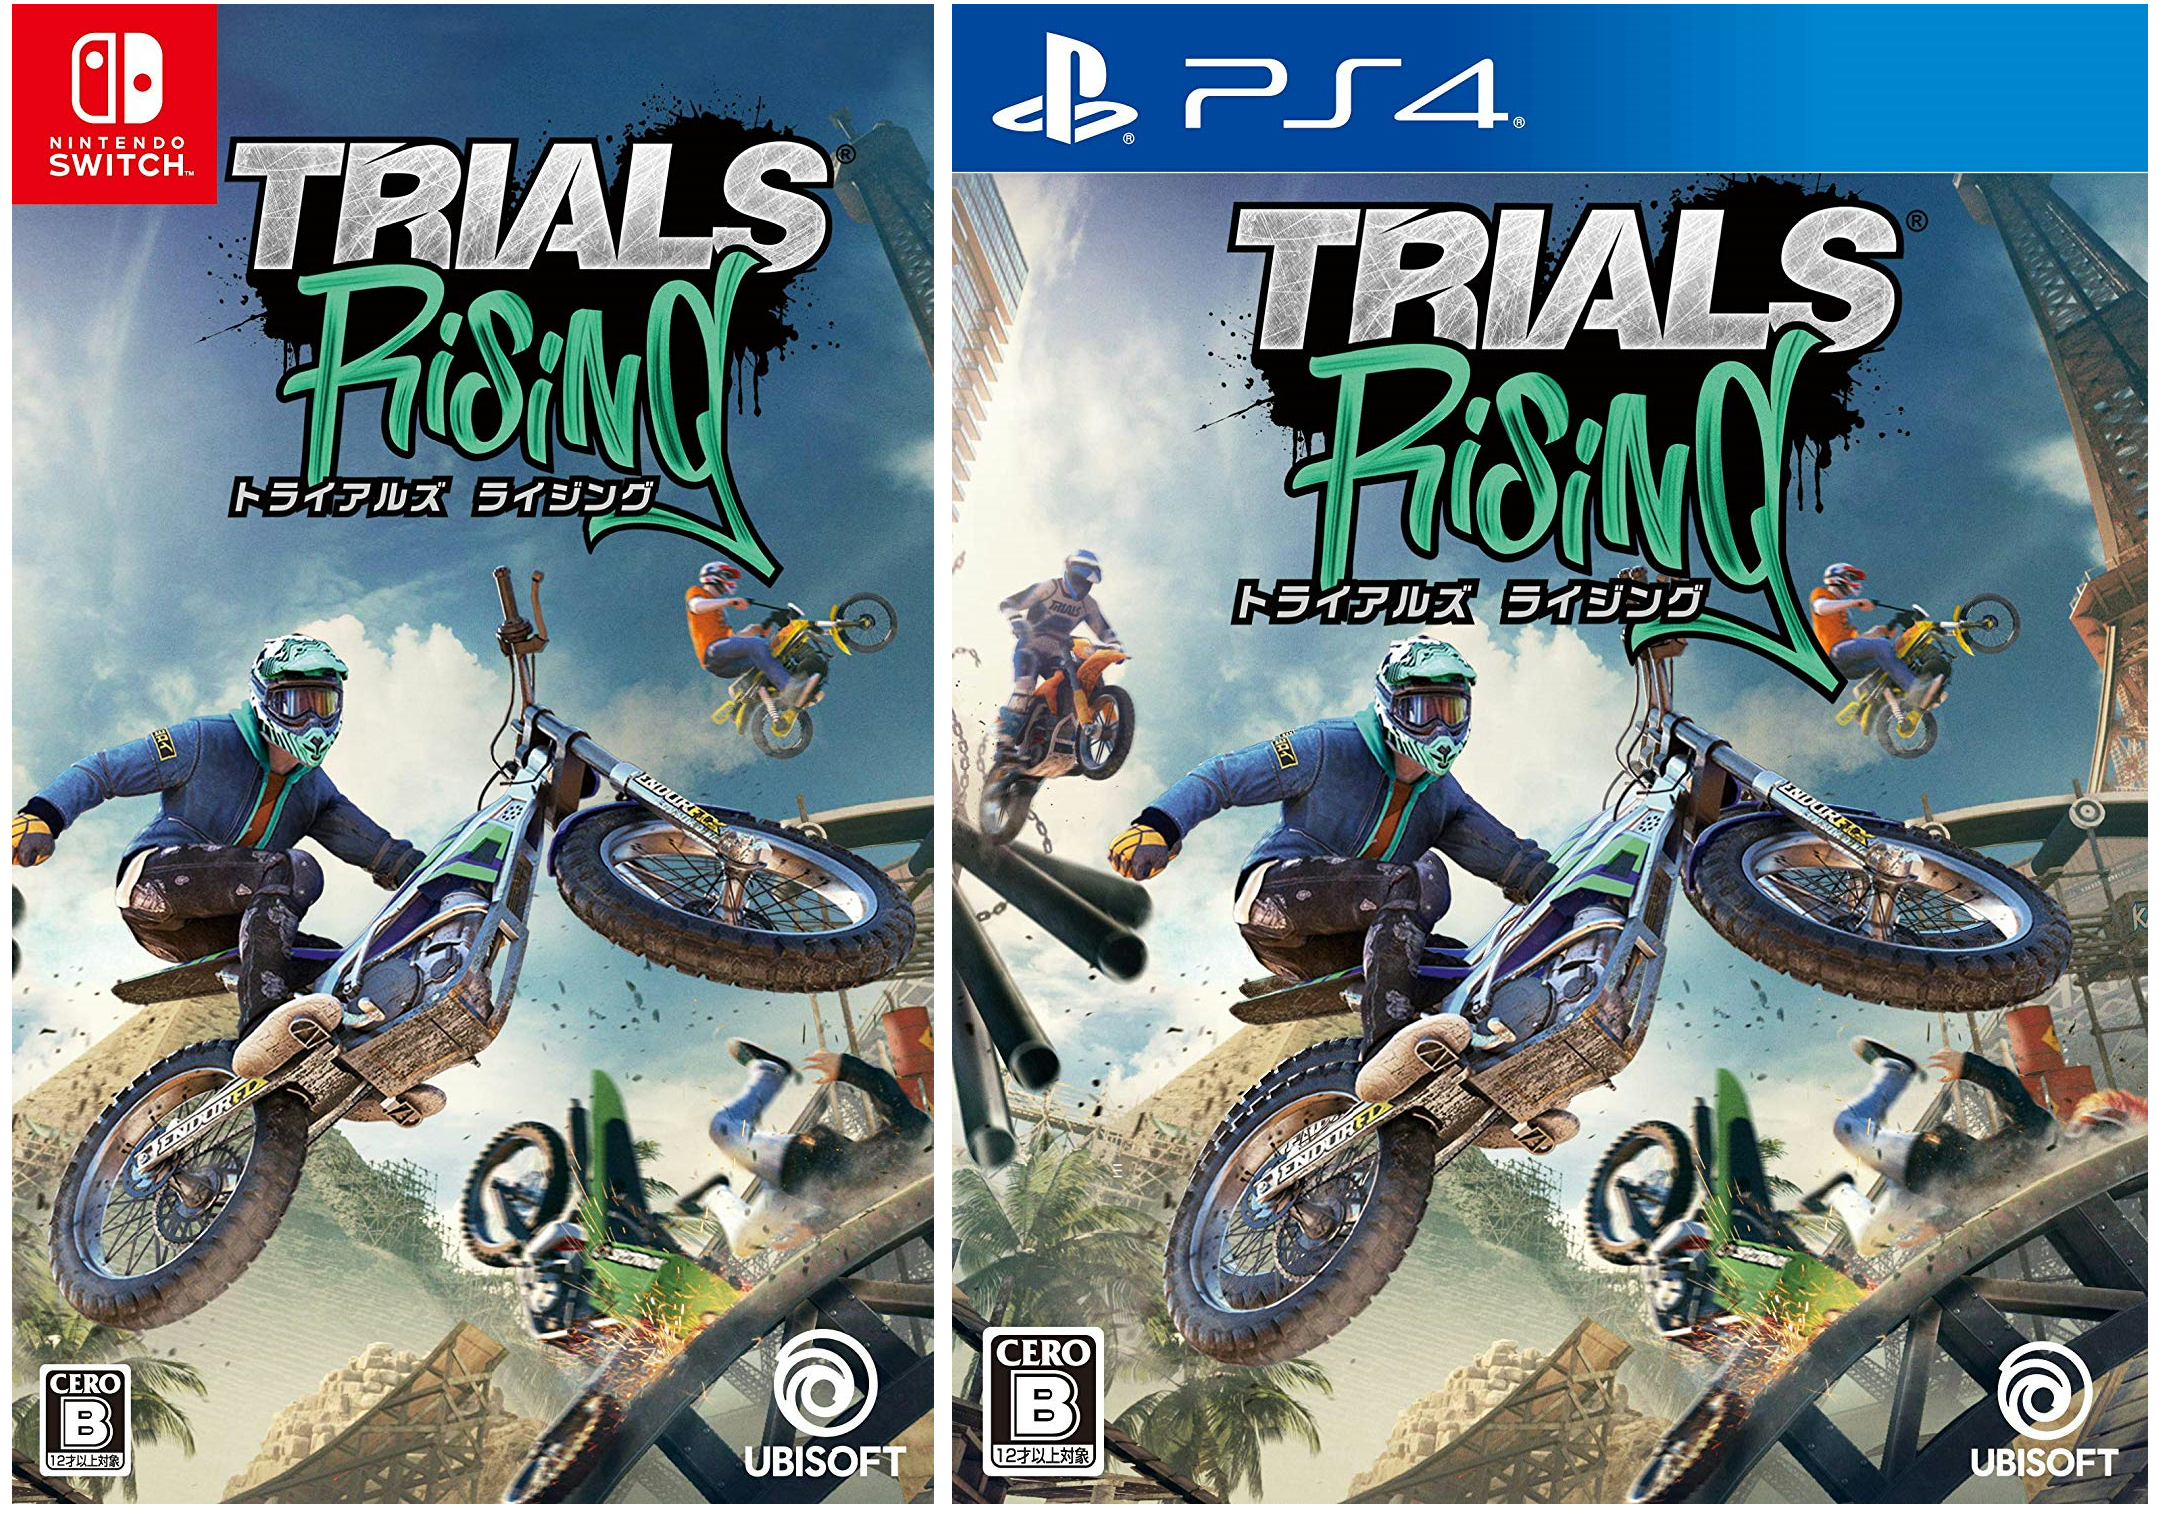 Trials ps4. Trials Fusion ps4 обложка. Trials Rising ps4. Trials Rising Gold Edition. Trials Rising обложка ps4.